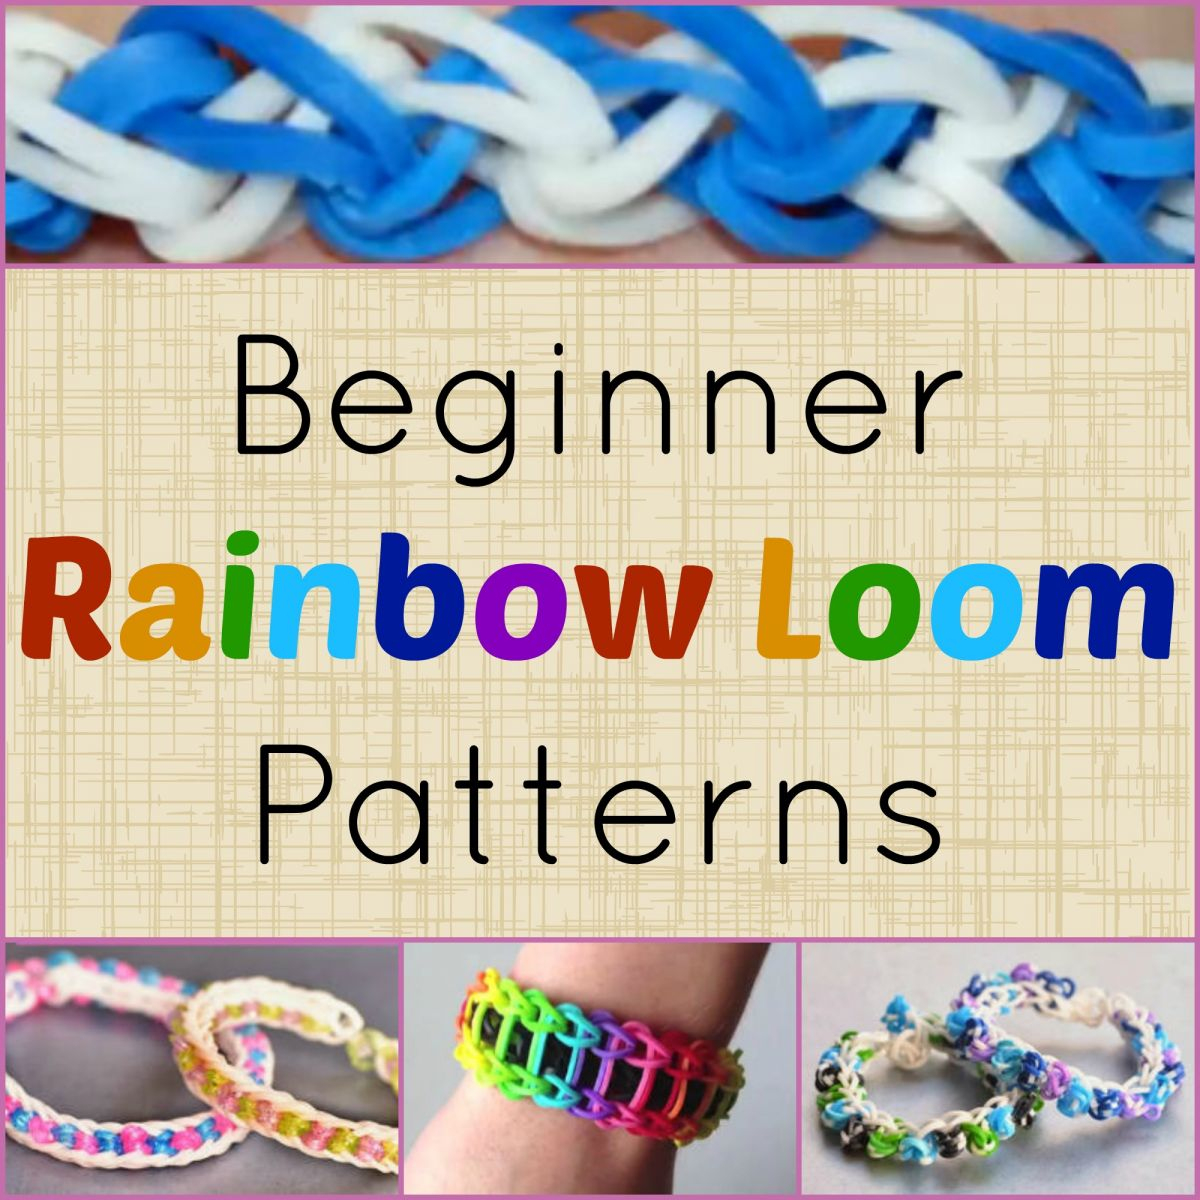 10 Beginner Rainbow Loom Patterns + Video Tutorials - Free Printable Loom Bracelet Patterns